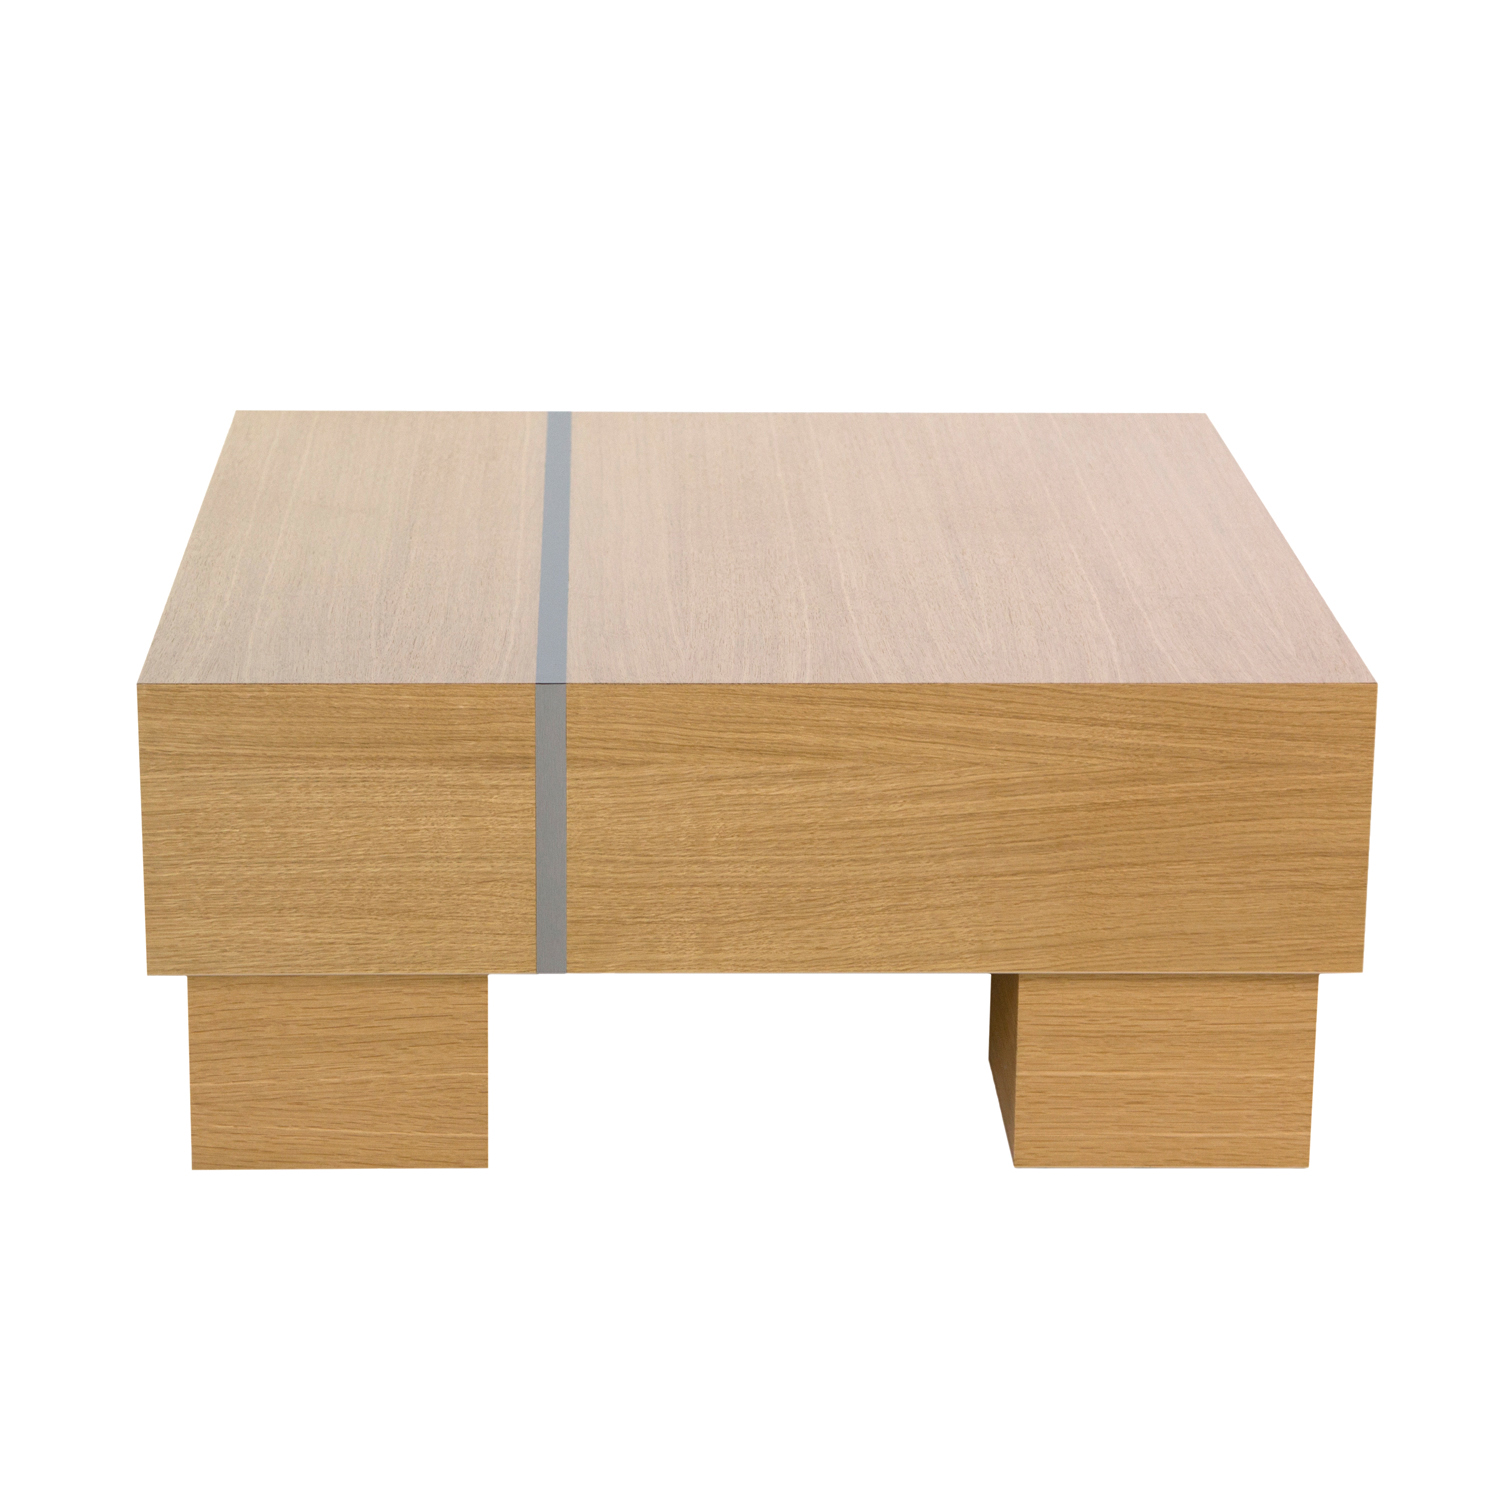 Couchtisch Wohnzimmertisch Beistelltisch Holztisch Tisch Holz Eiche